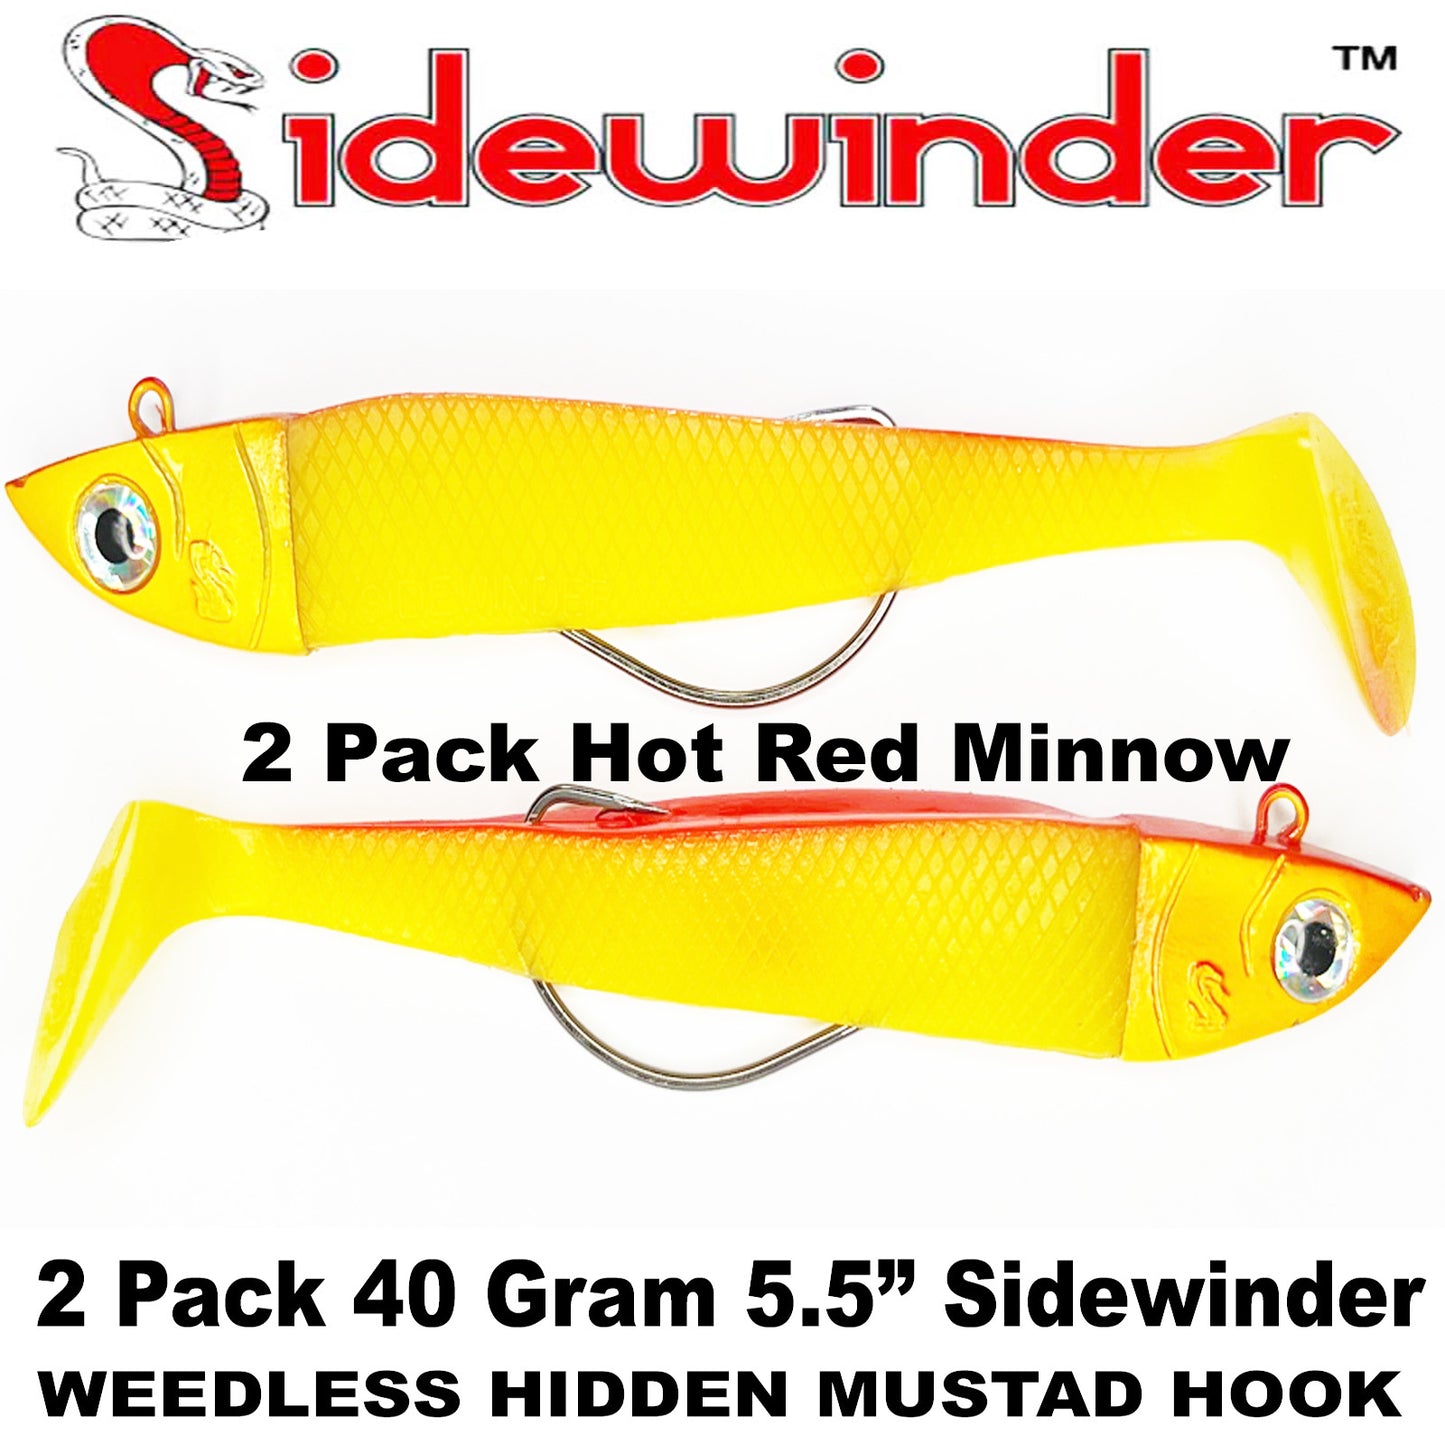 Sidewinder Weedless Minnows White & Red Spot 5.5 Inch 40g